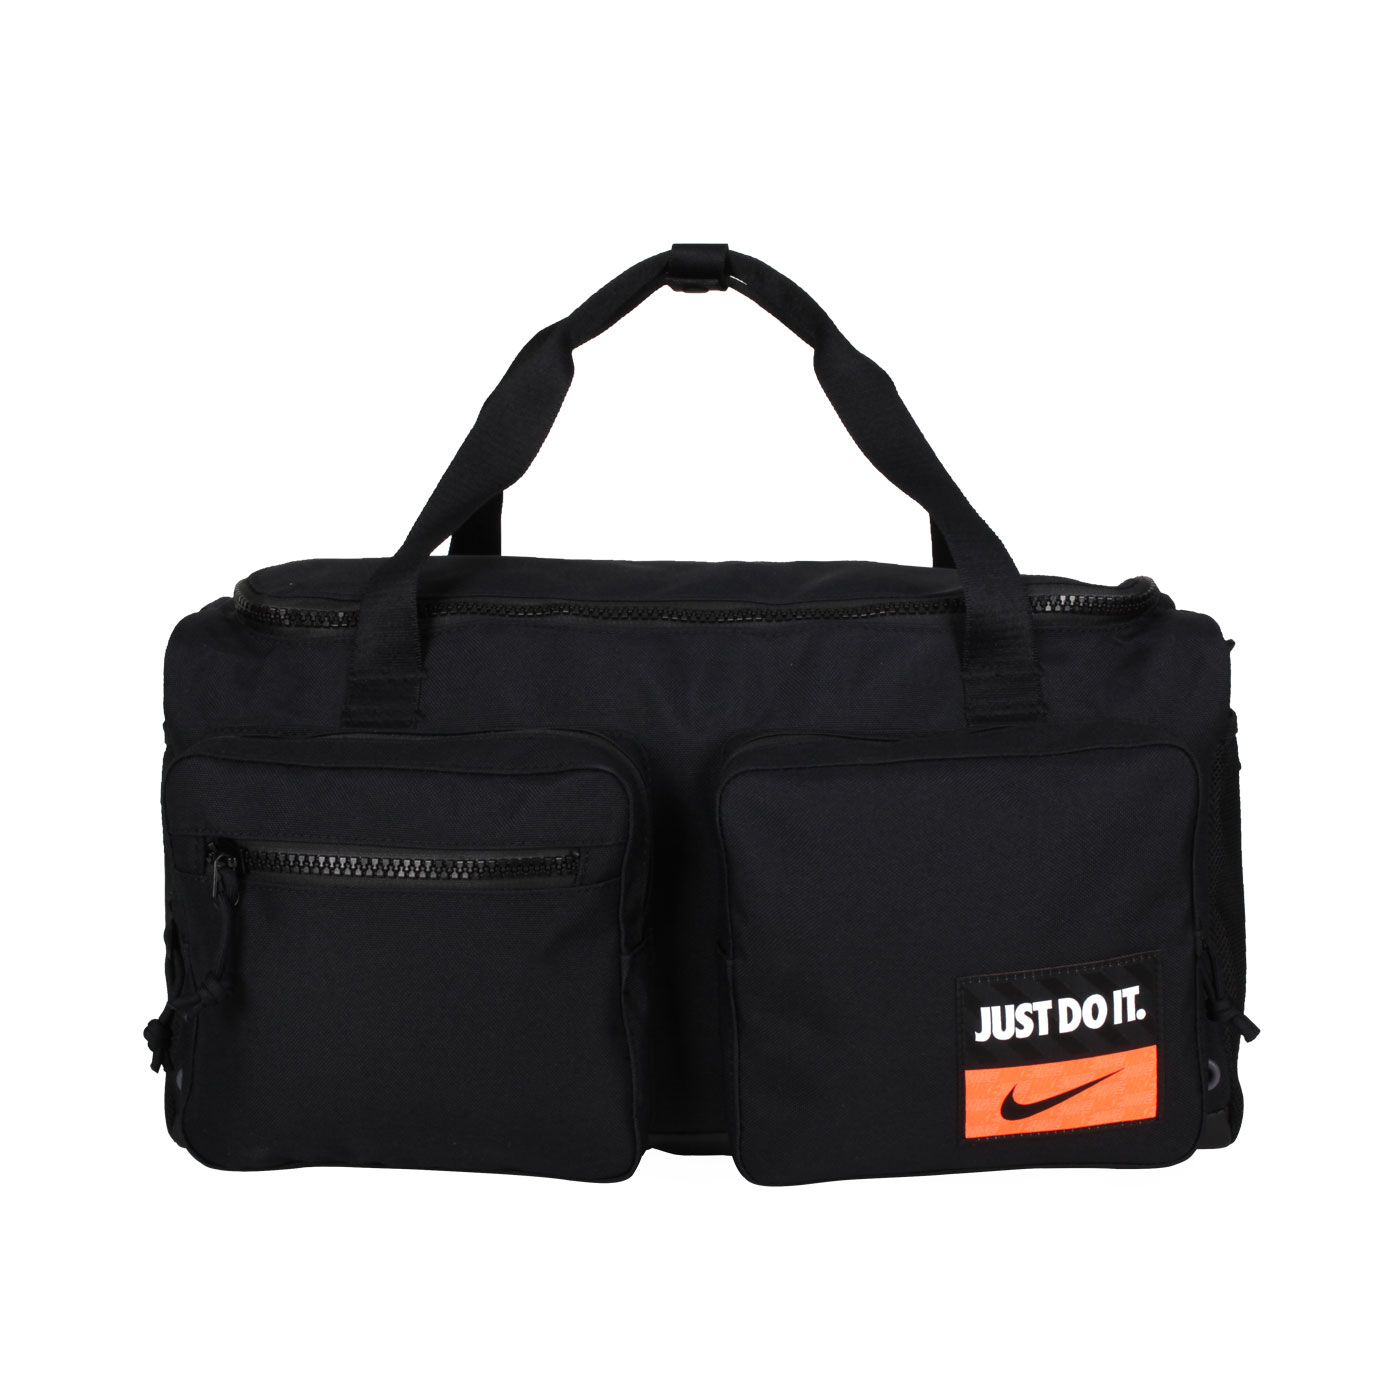 NIKE 大型側背氣墊手提旅行袋 DQ5199-010